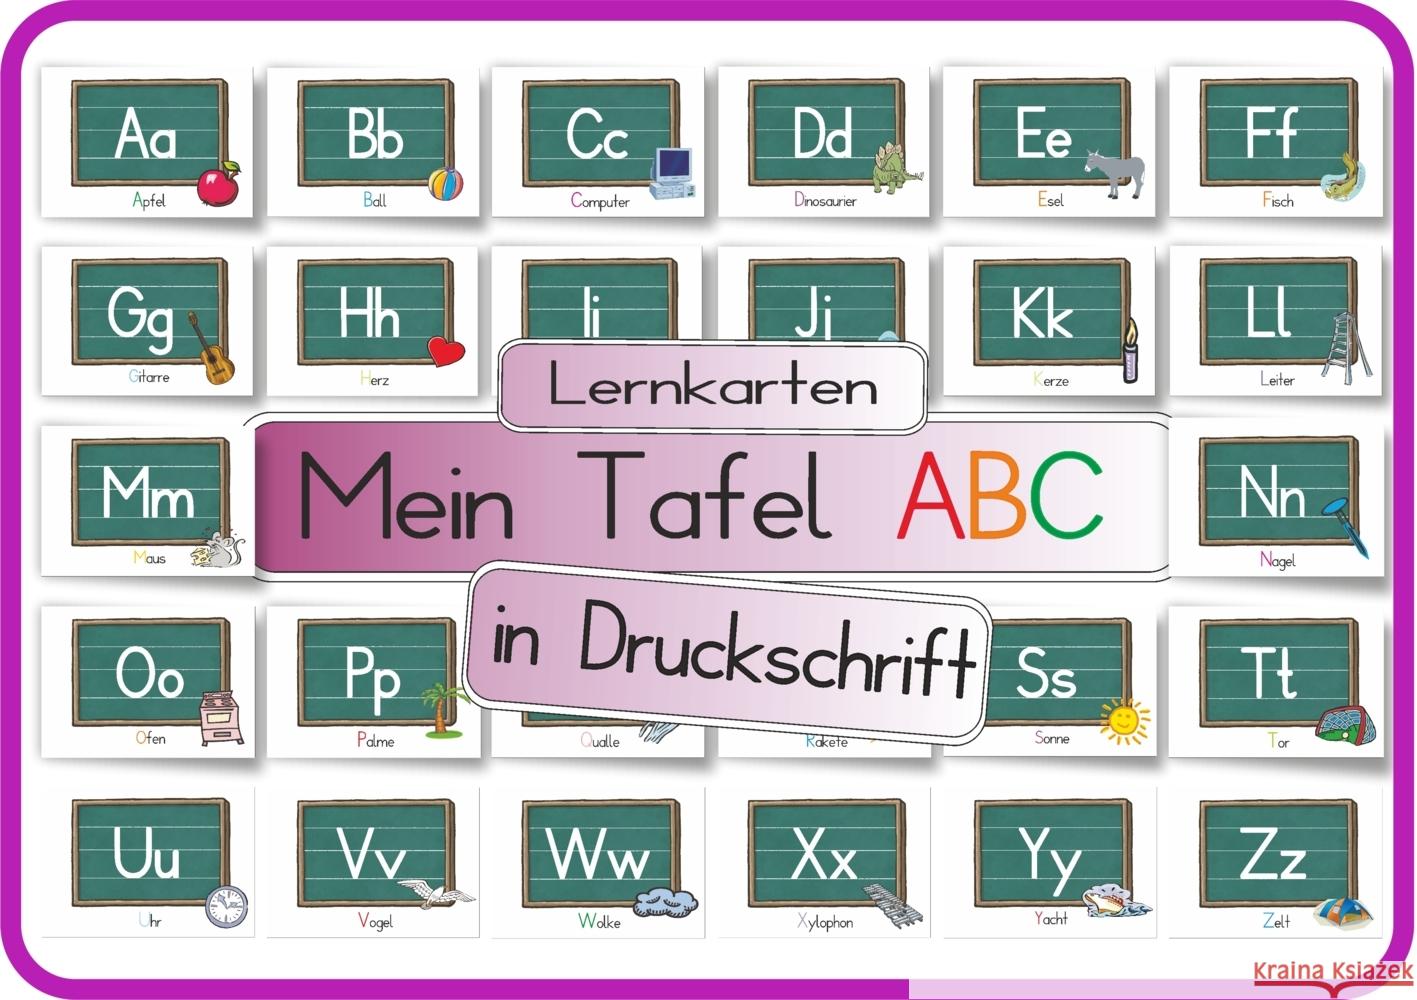 Mein Tafel ABC in Druckschrift Momm, Helga 4262416630295 E & Z-Verlag - książka